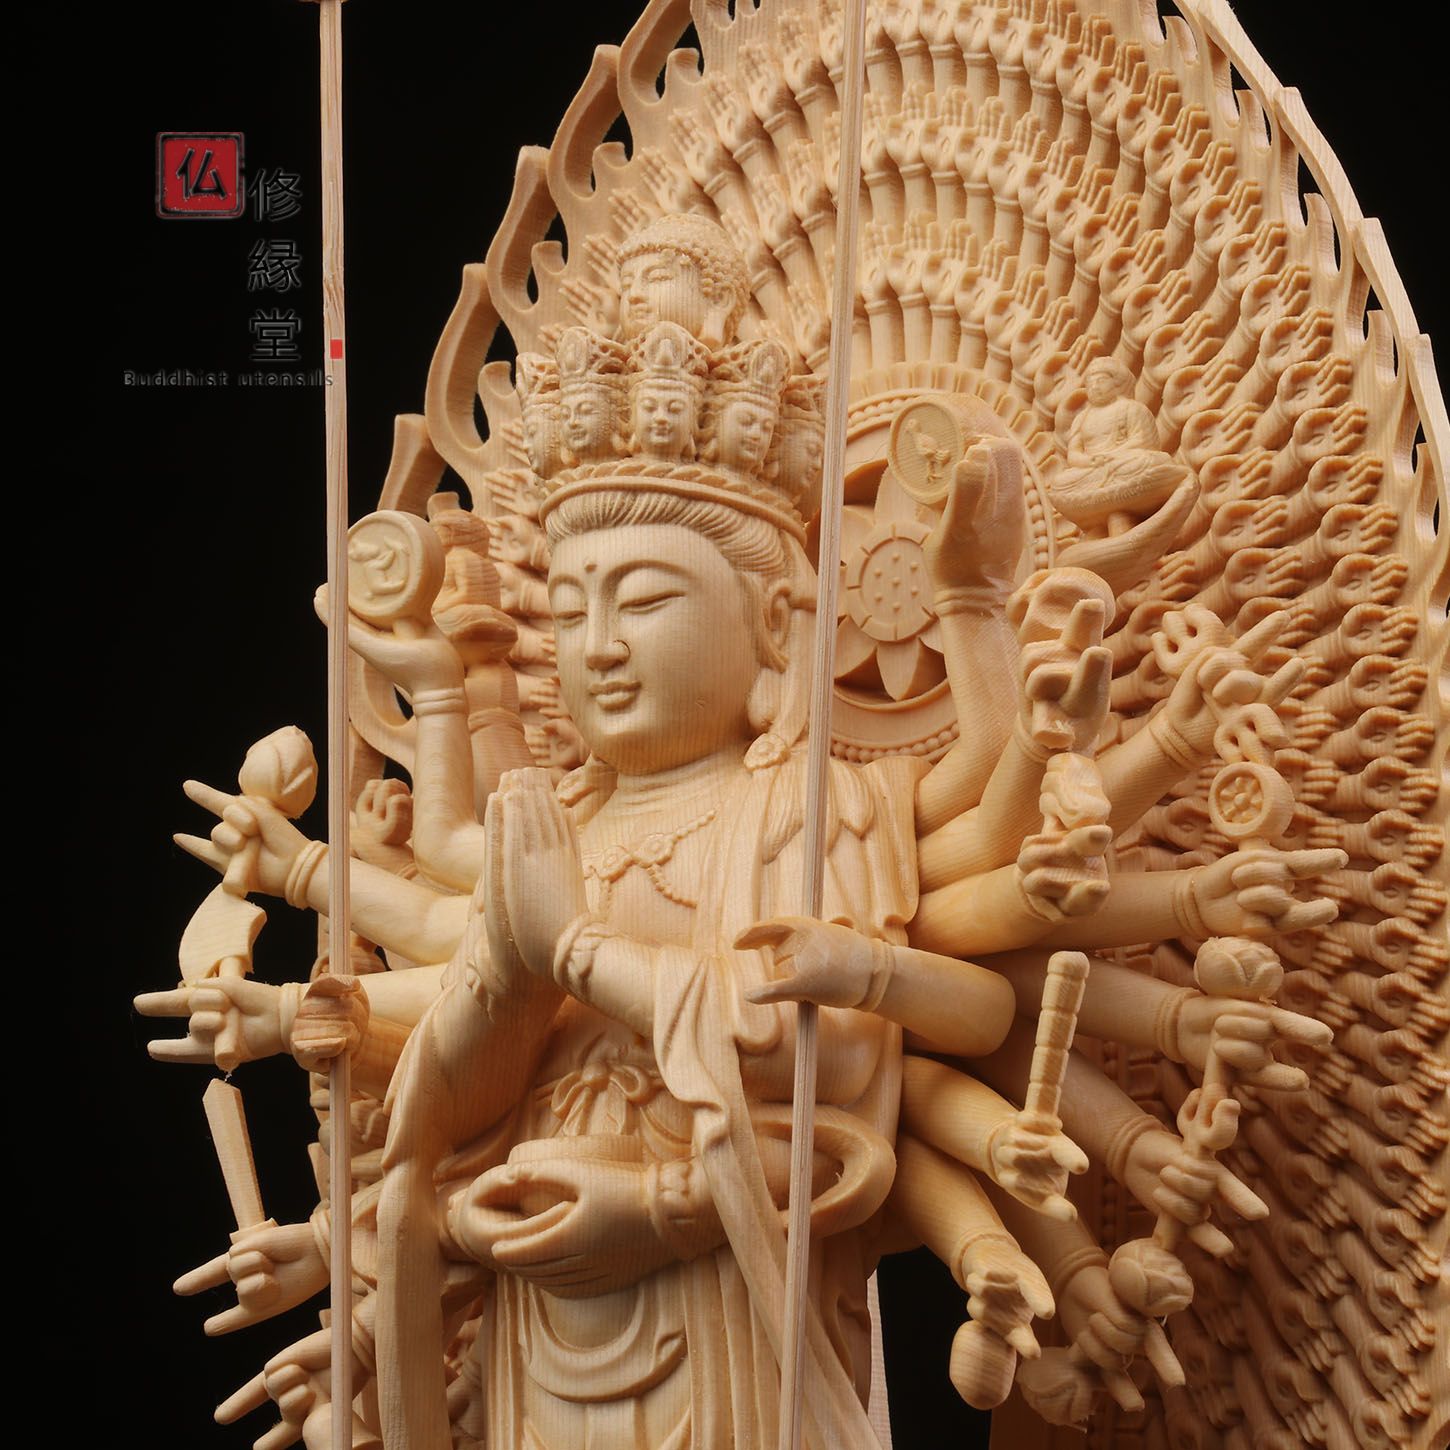 超歓迎 阿弥陀三尊立像 木彫仏像 【修縁堂】最高級 彫刻 仏教工芸 天然